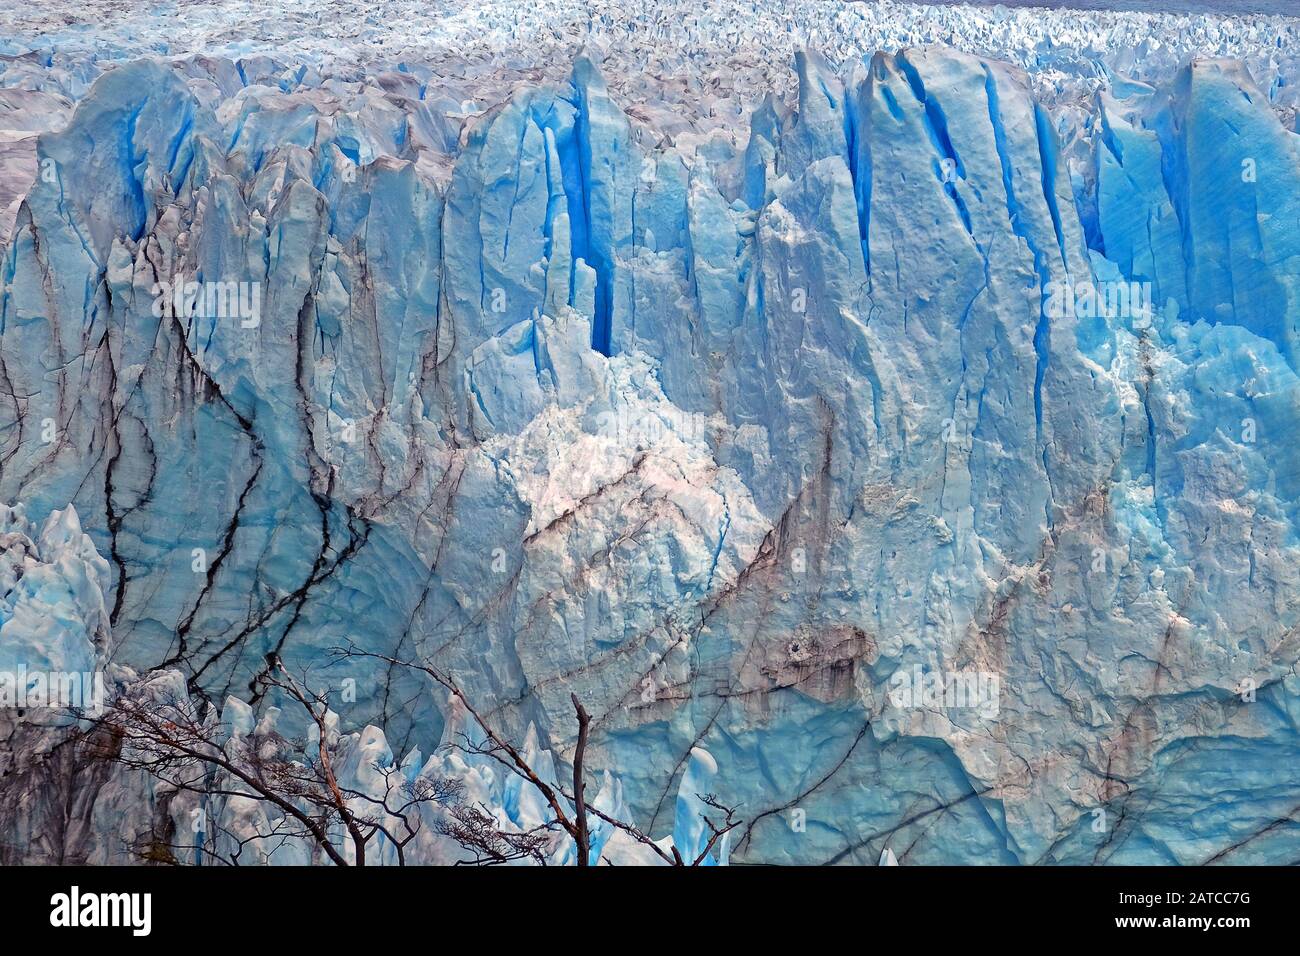 Vorderansicht der Eistextur des Perito Moreno Gletschers in El Calafate, Argentinien, während eines bewölkten Tages. Stockfoto